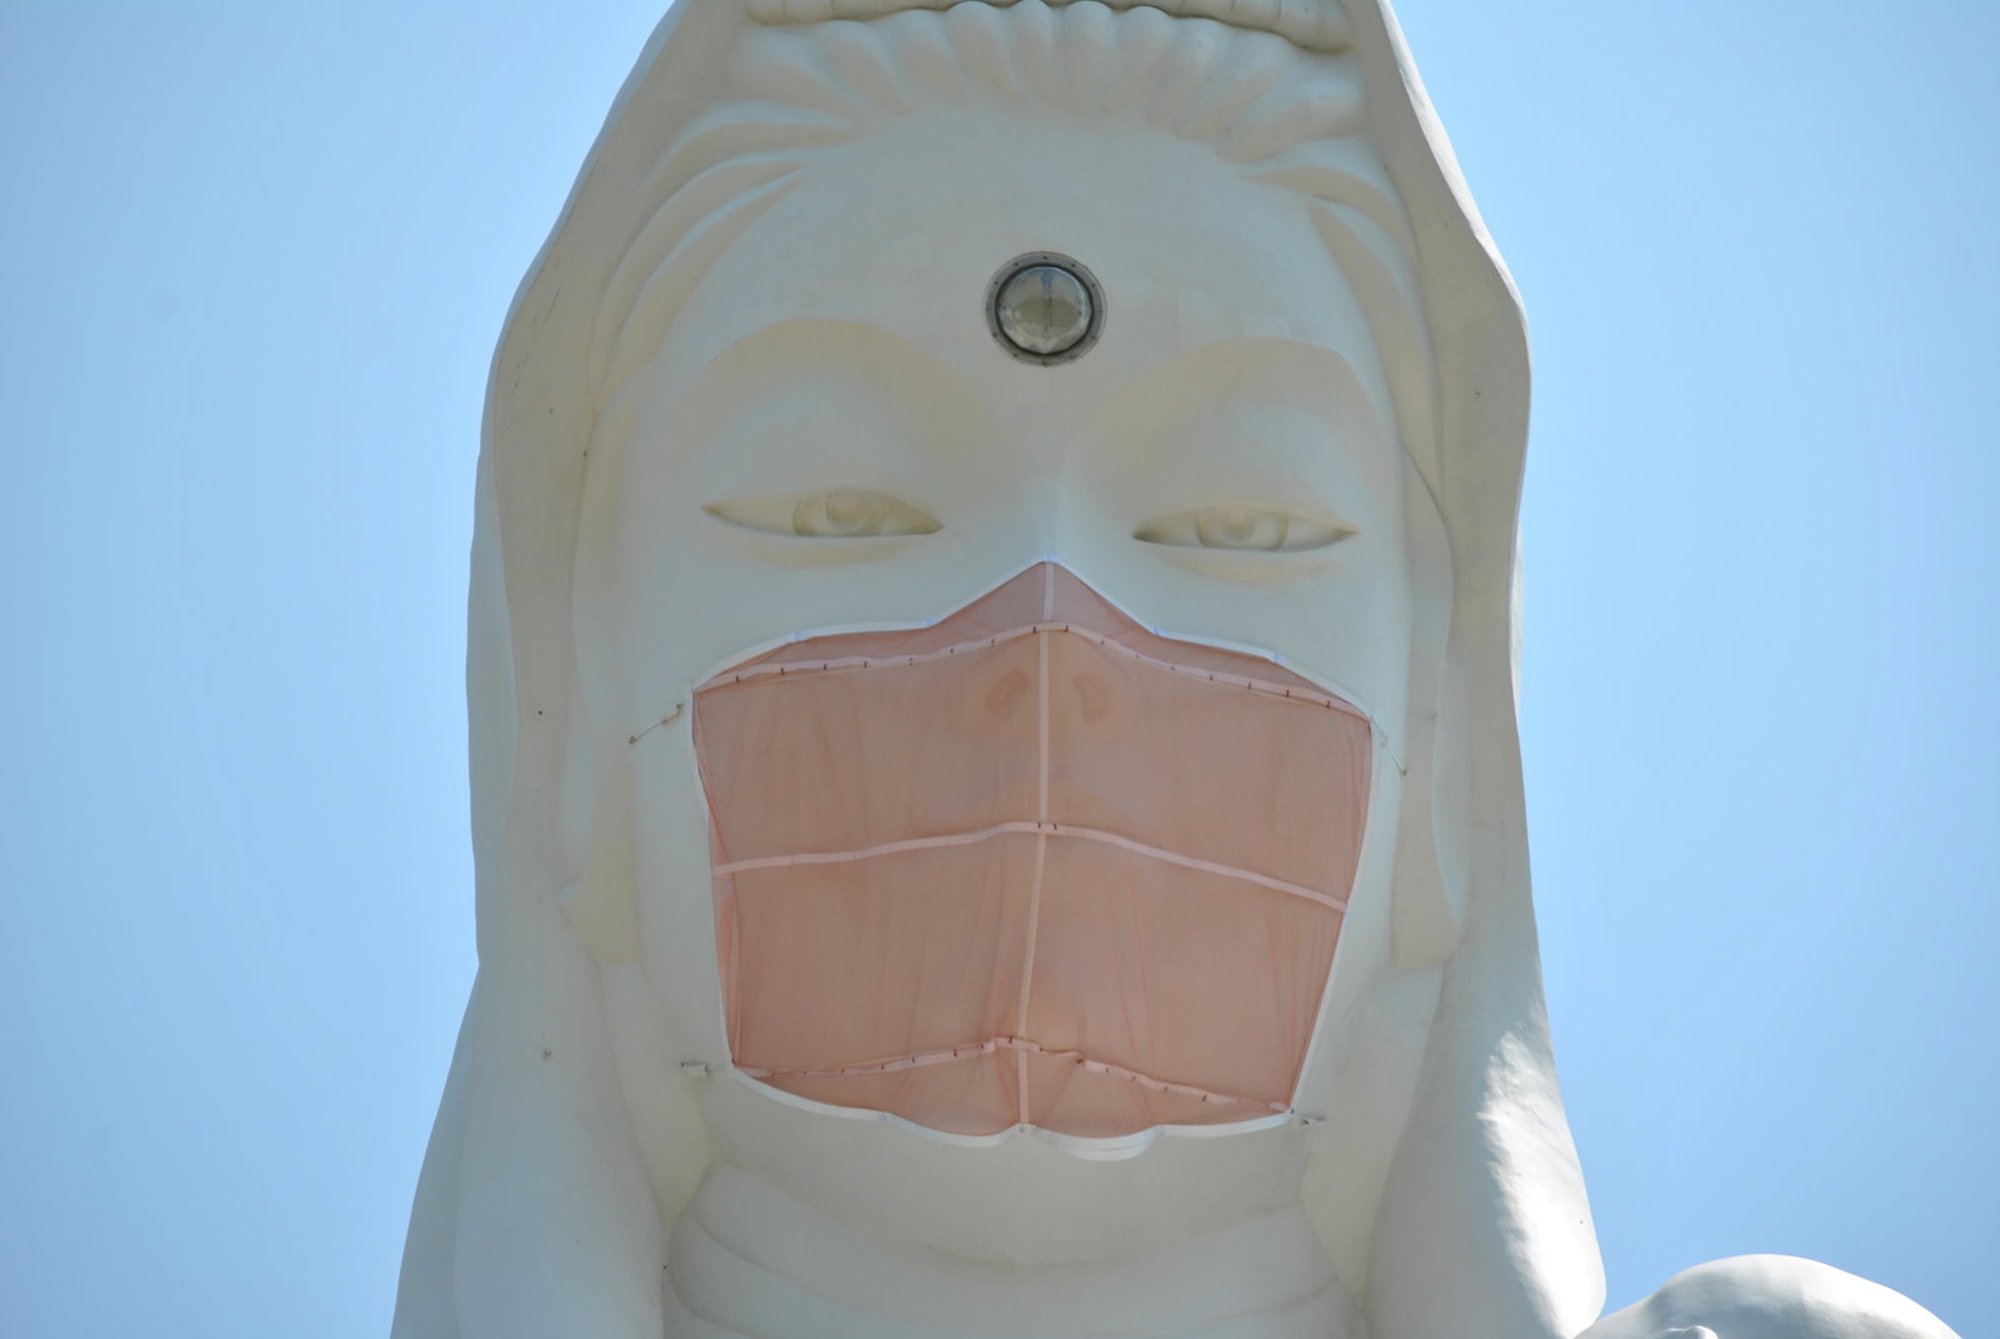 Они надели маски. Статуя Богини милосердия Каннон. Статуя в медицинской маске. Маска на статуе Япония. Статуя в маске для лица.